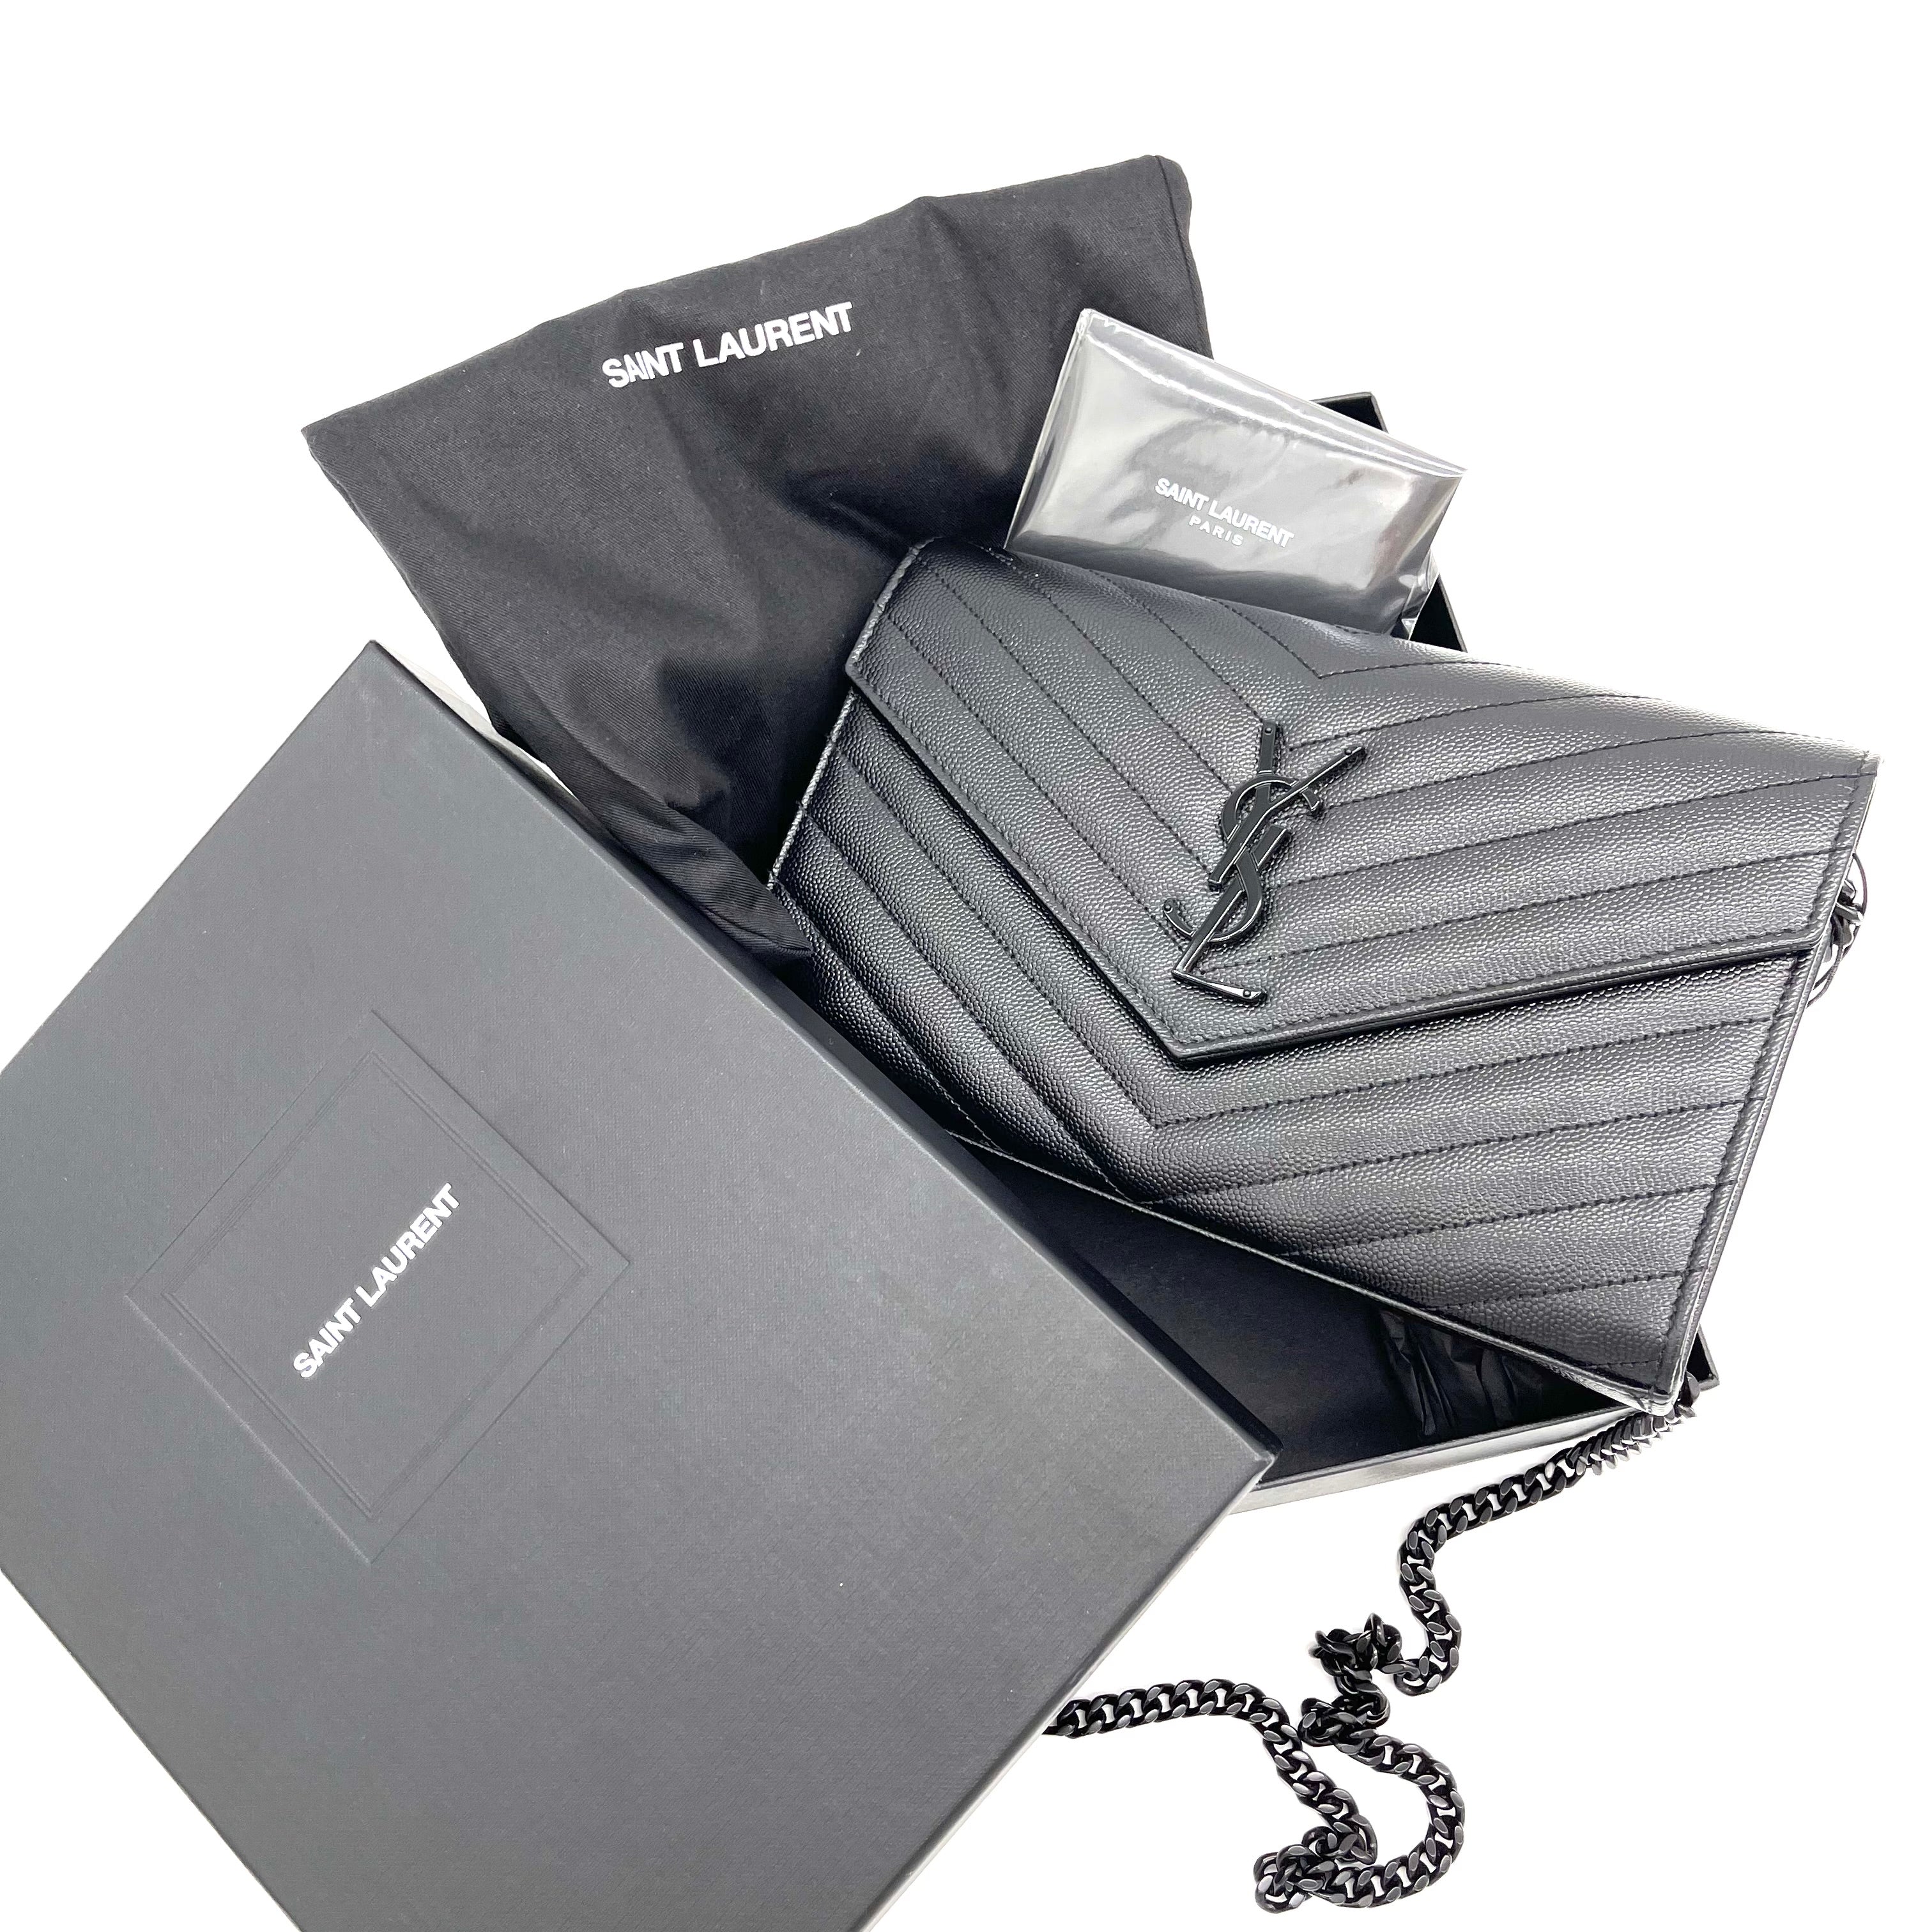 YVES SAINT LAURENT Chevron Leather Chain Wallet Shoulder Bag Silver